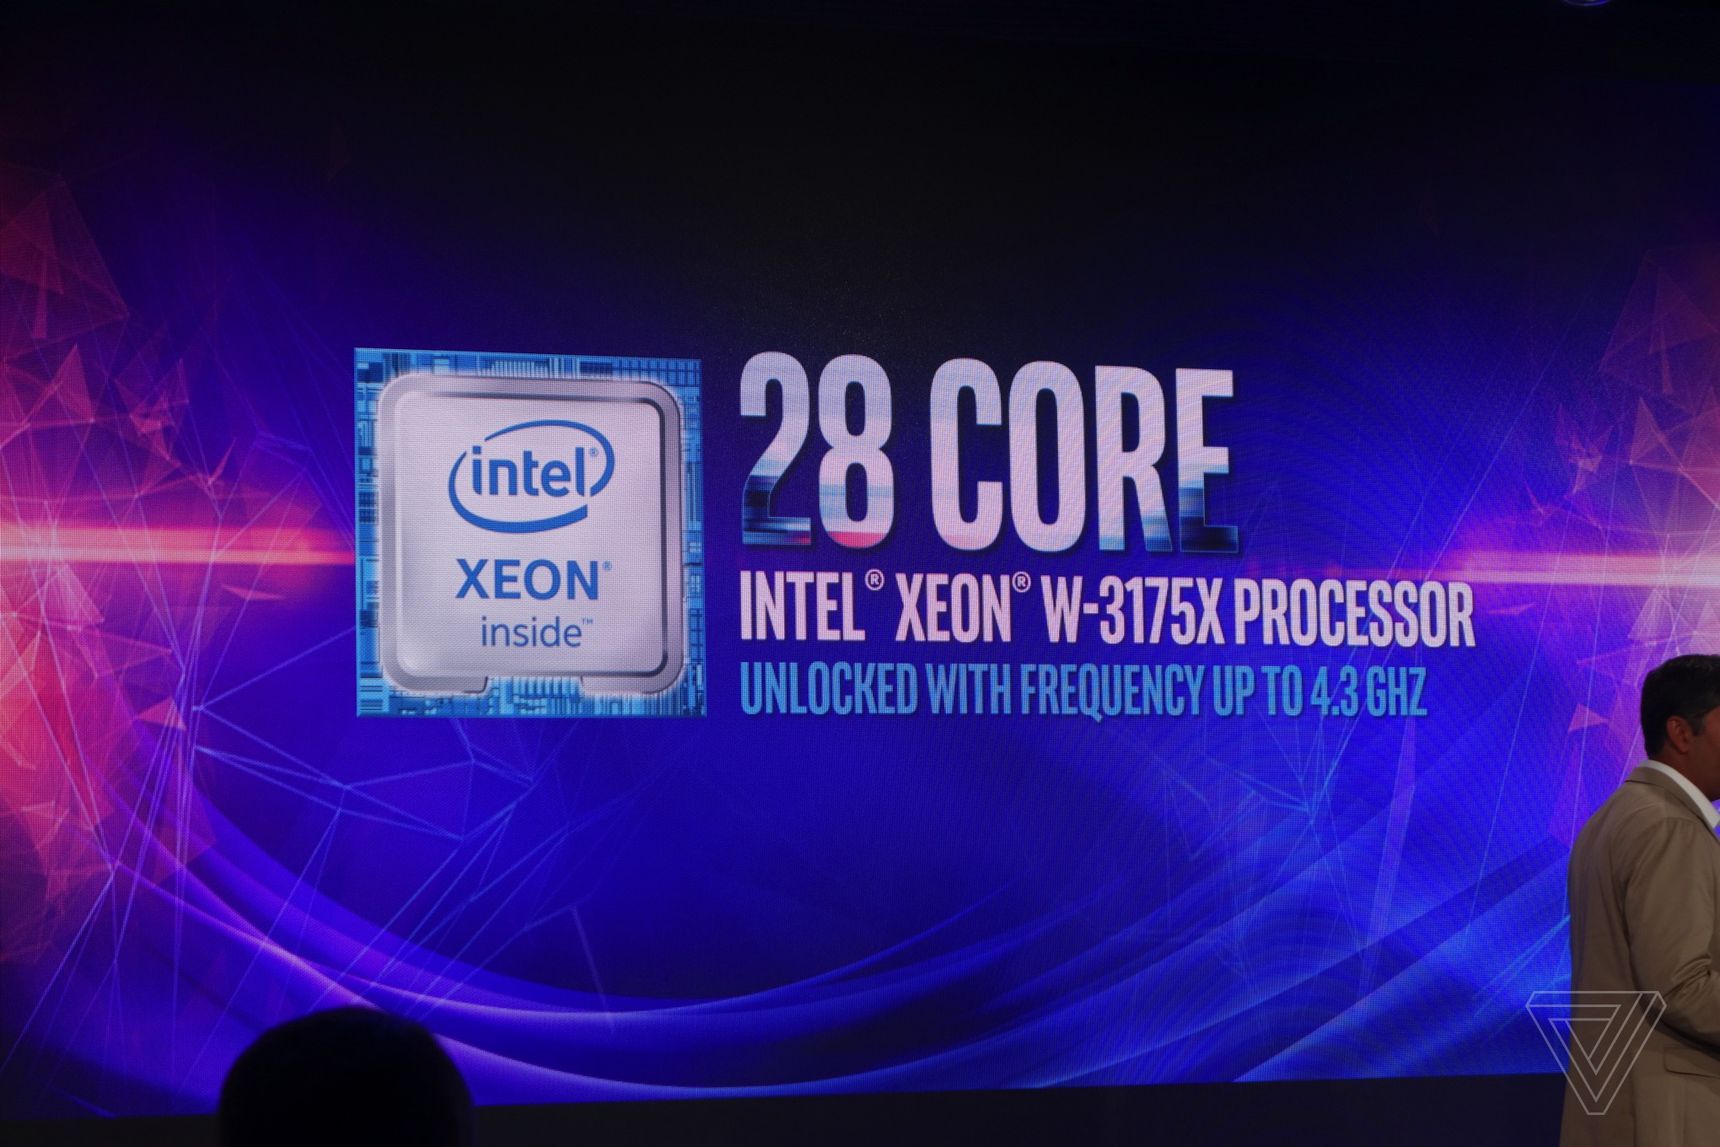 Quên i7 đi, Intel Core i9 mới là trùm cuối Gaming